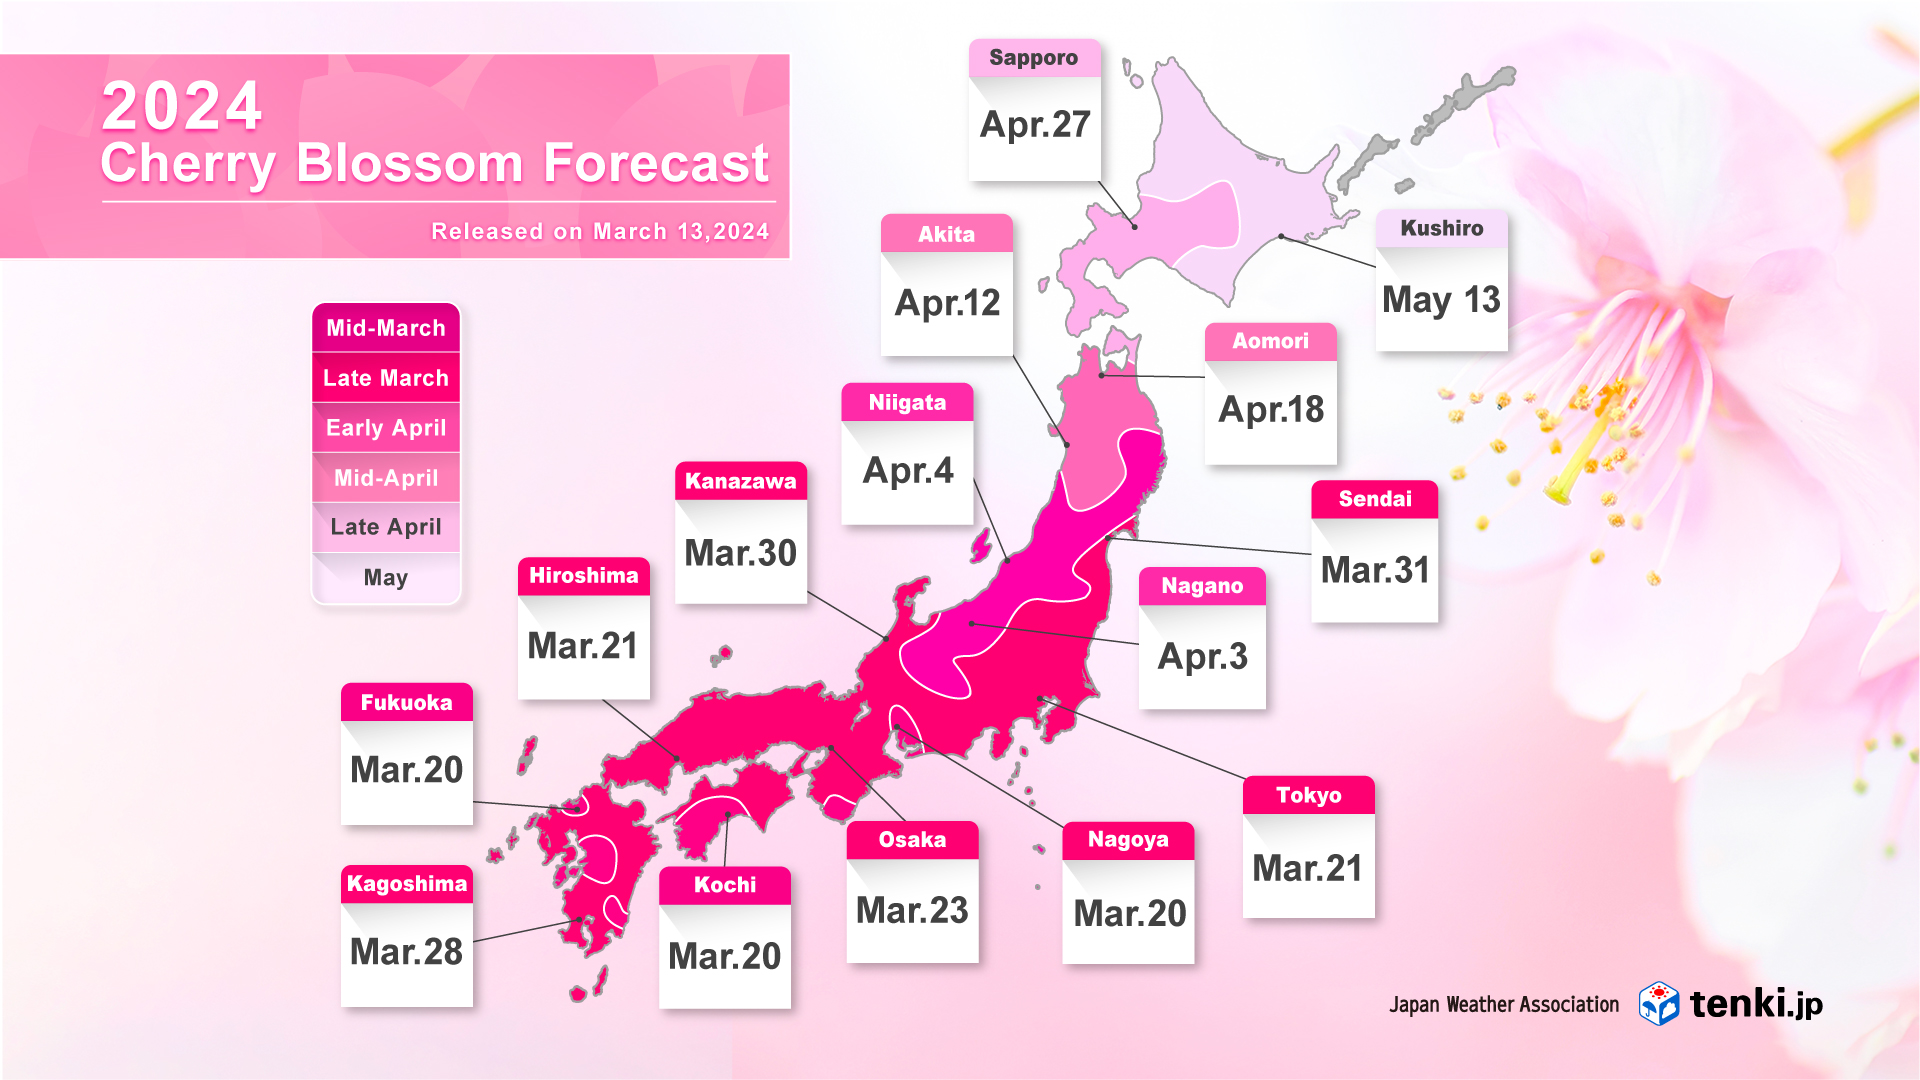 Cherry blossom forecast map 